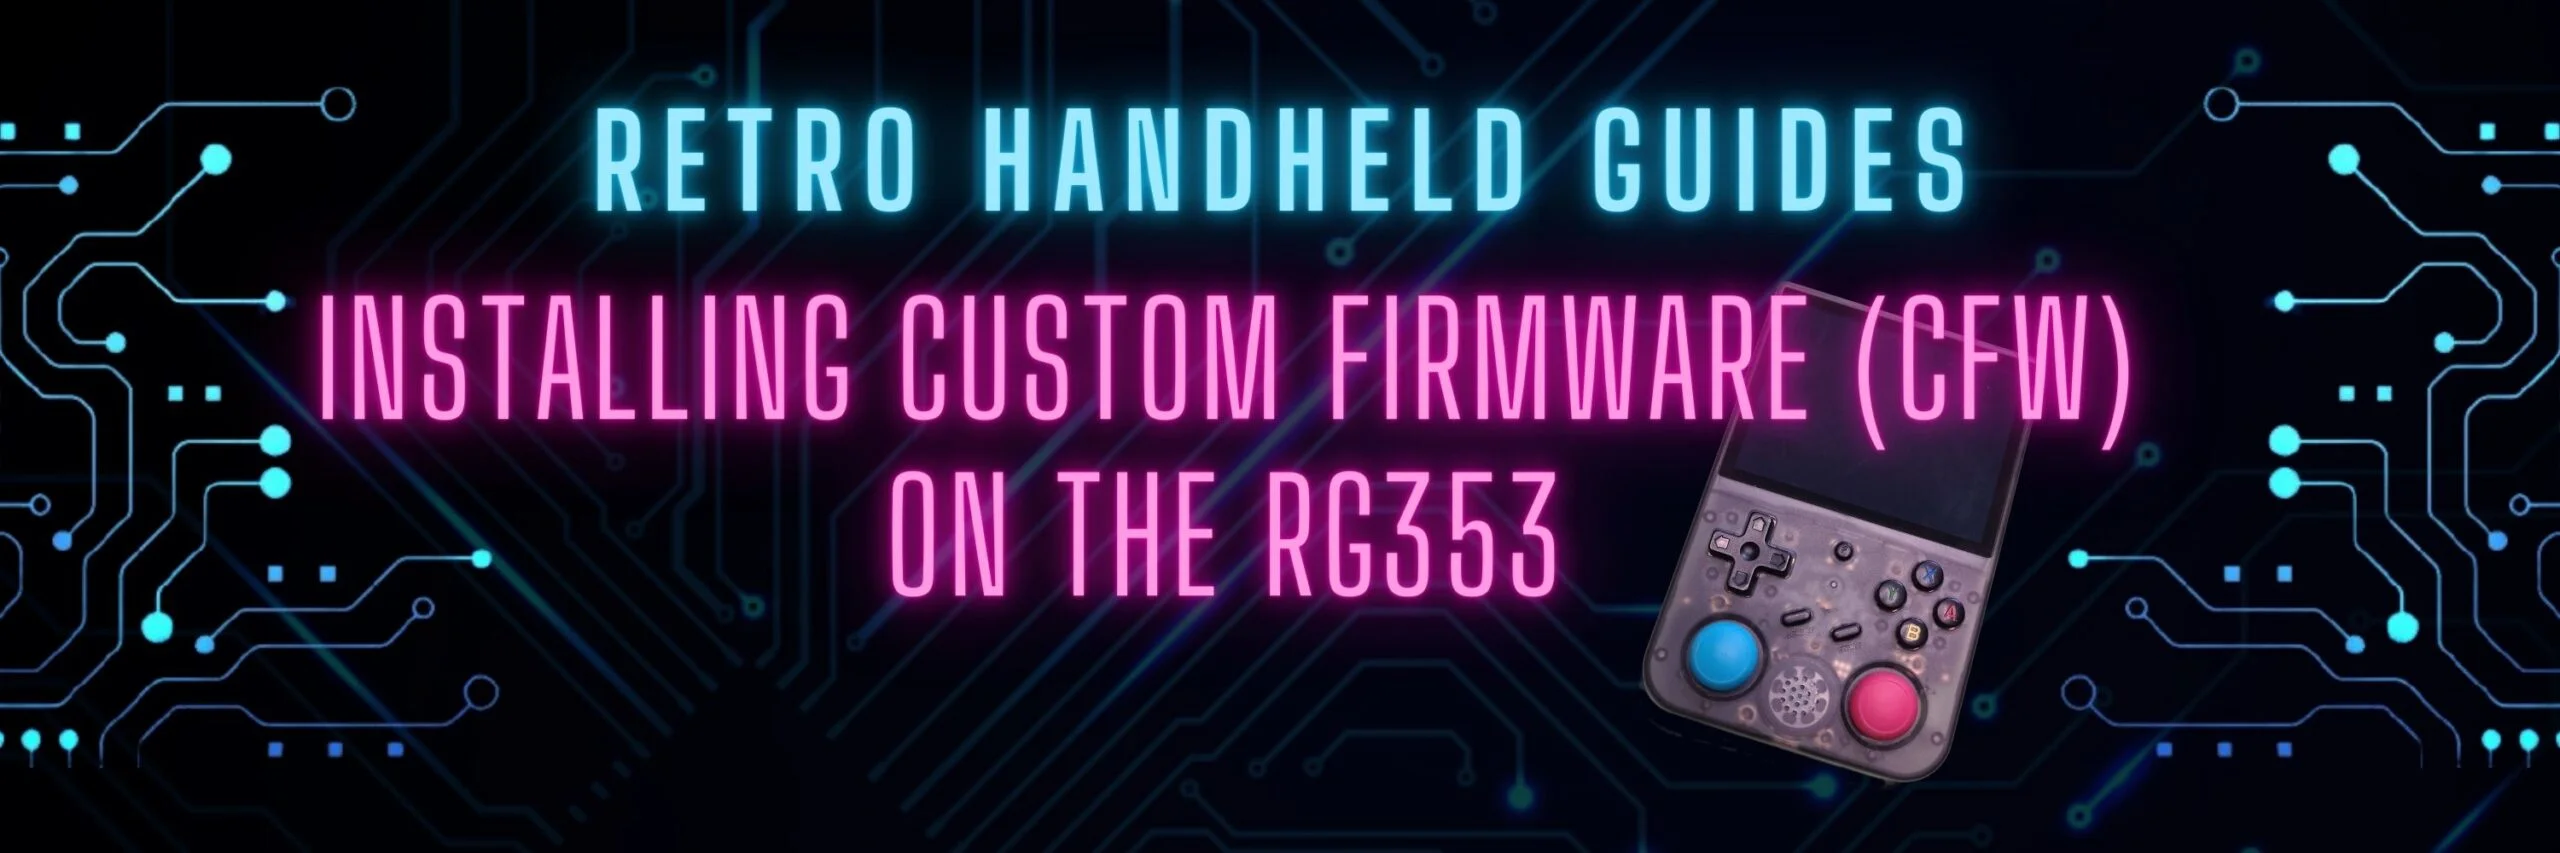 RG353 Custom Firmware Installation Guide